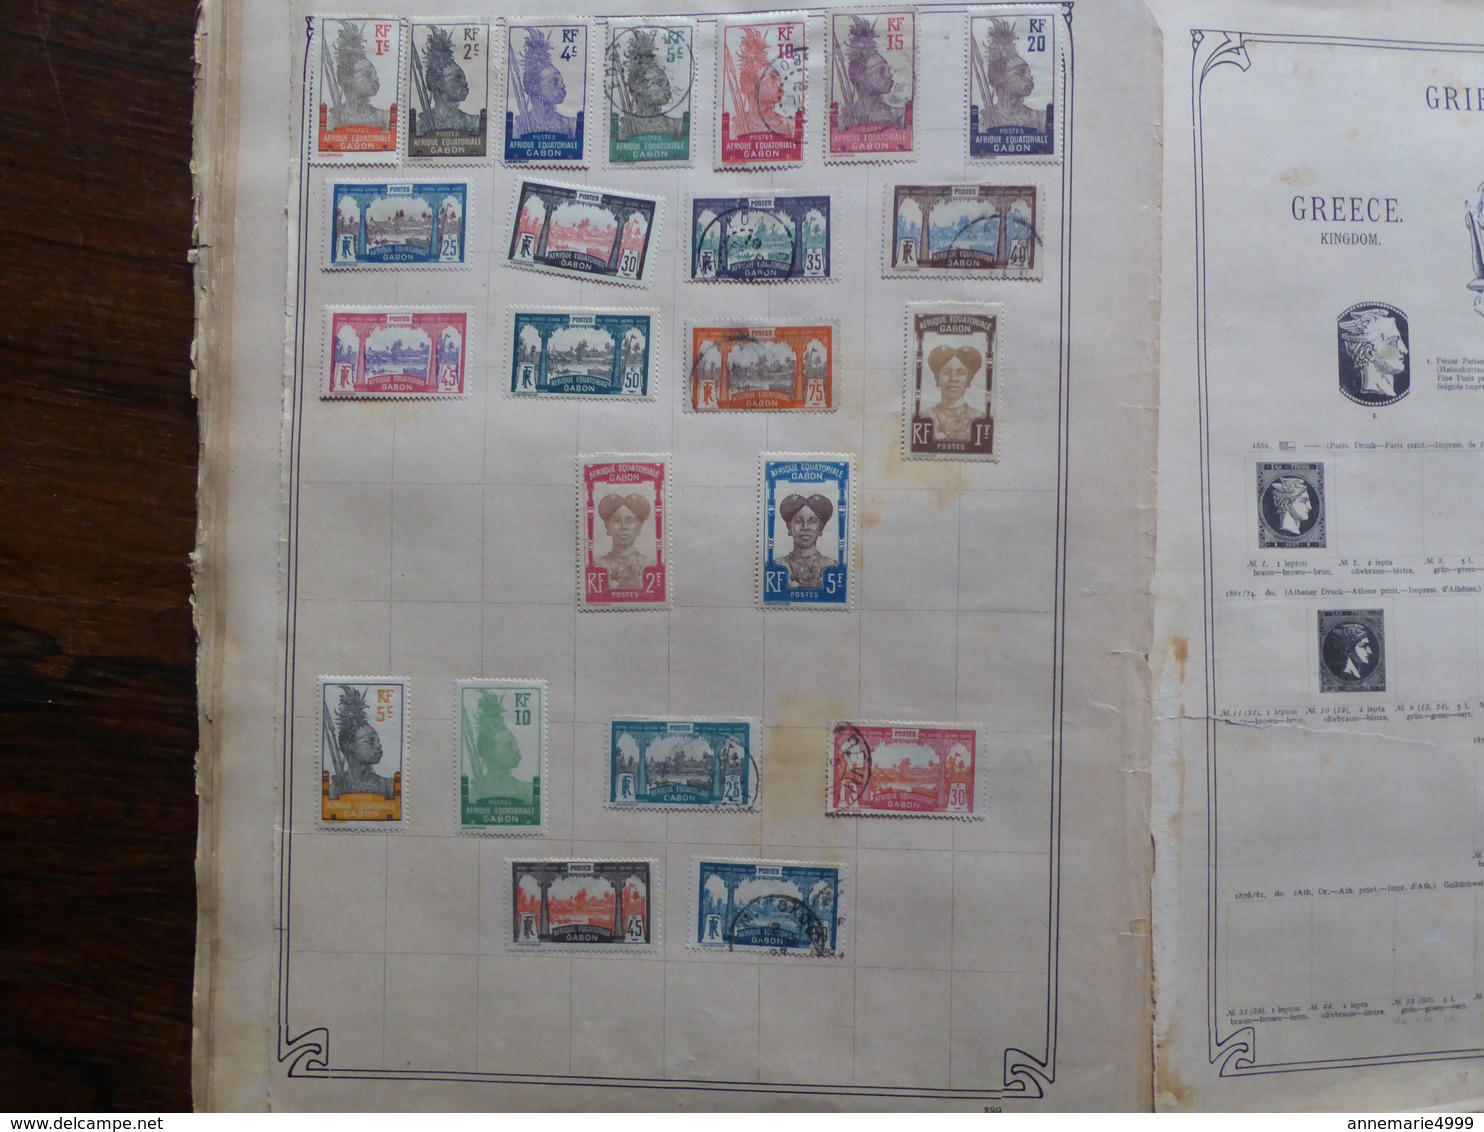 Vieil album collection Monde plusieurs milliers de timbres Voir tous les scans